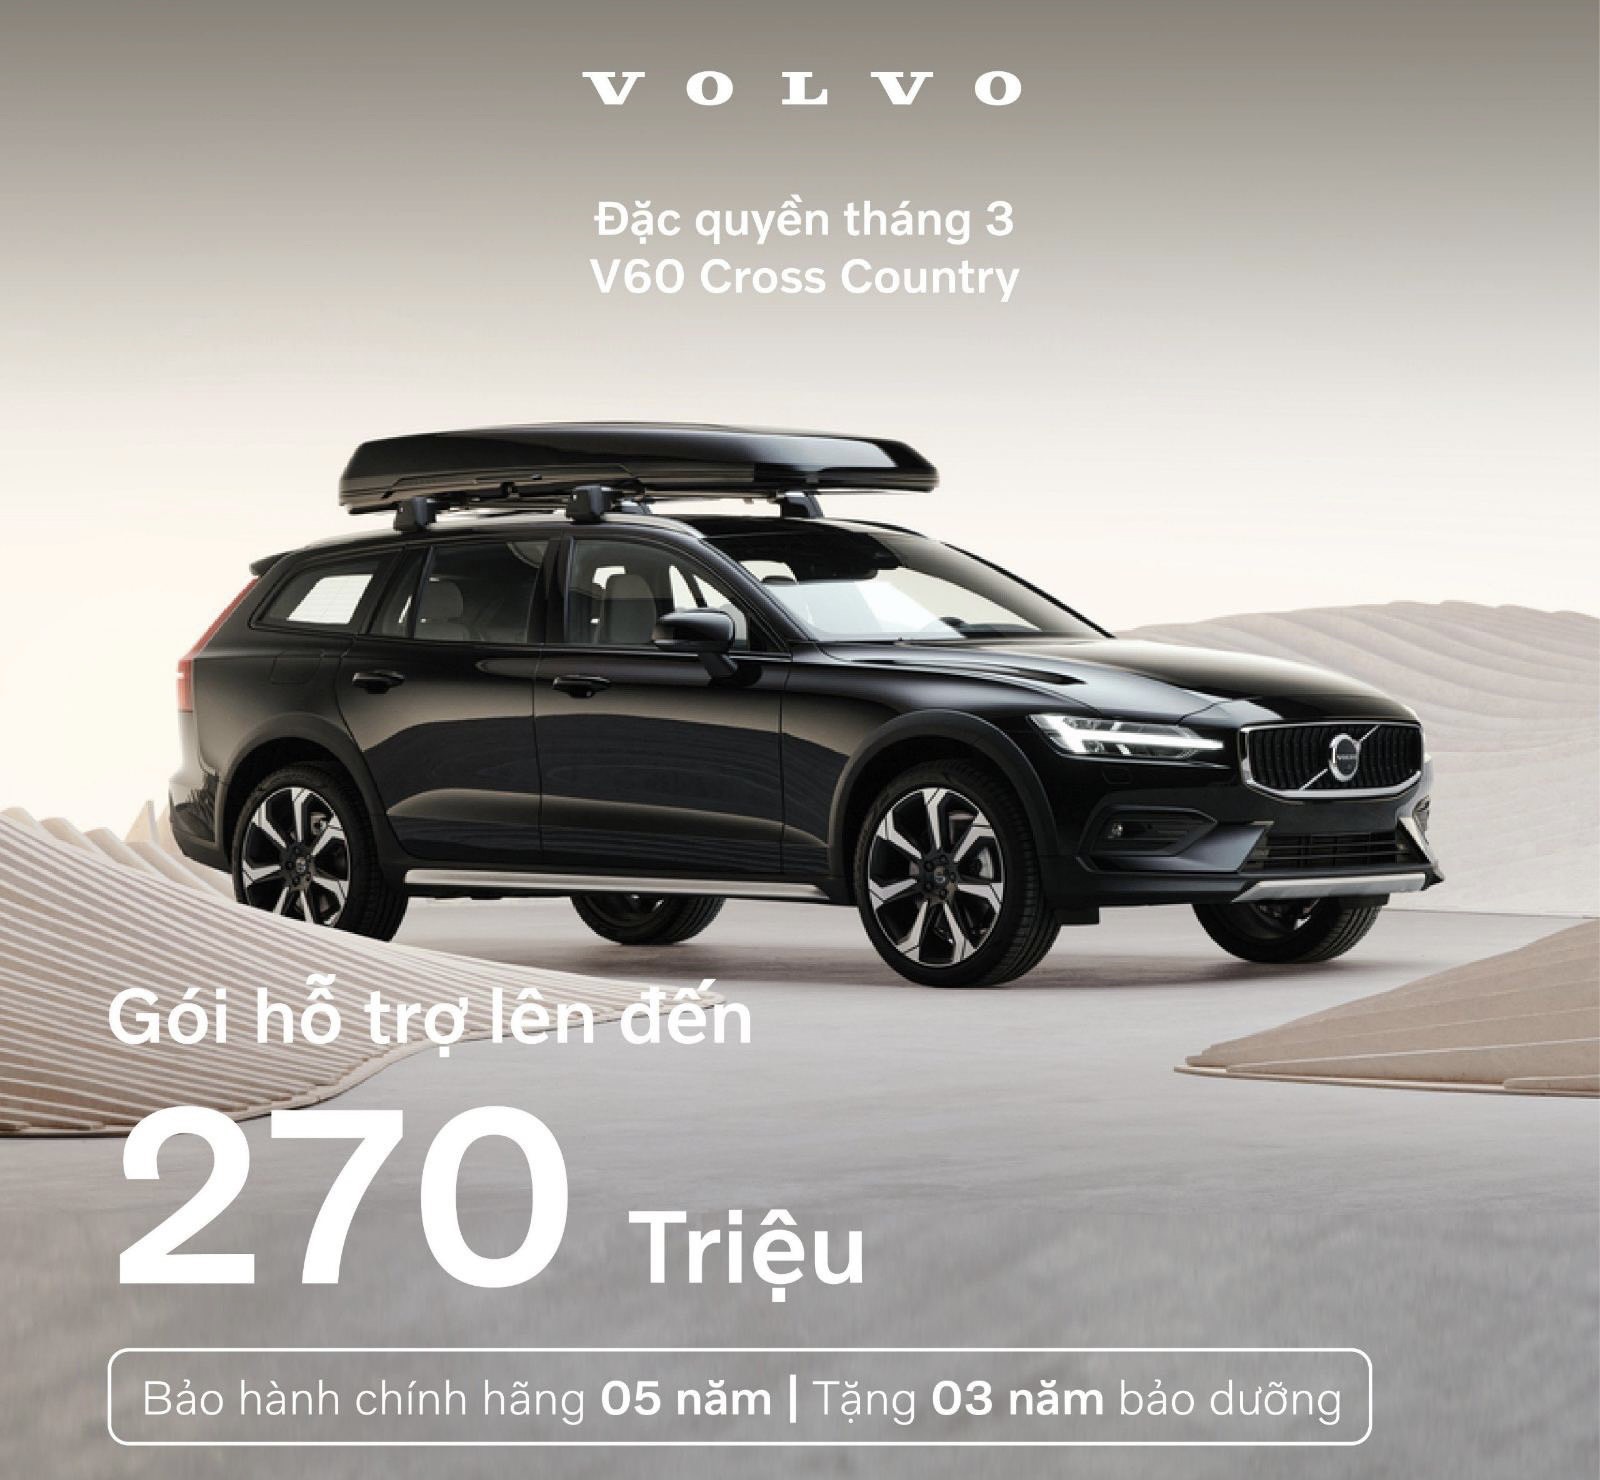 Volvo V60 Cross Country - Sẵn sàng phiêu lưu, đam mê thoả sức.